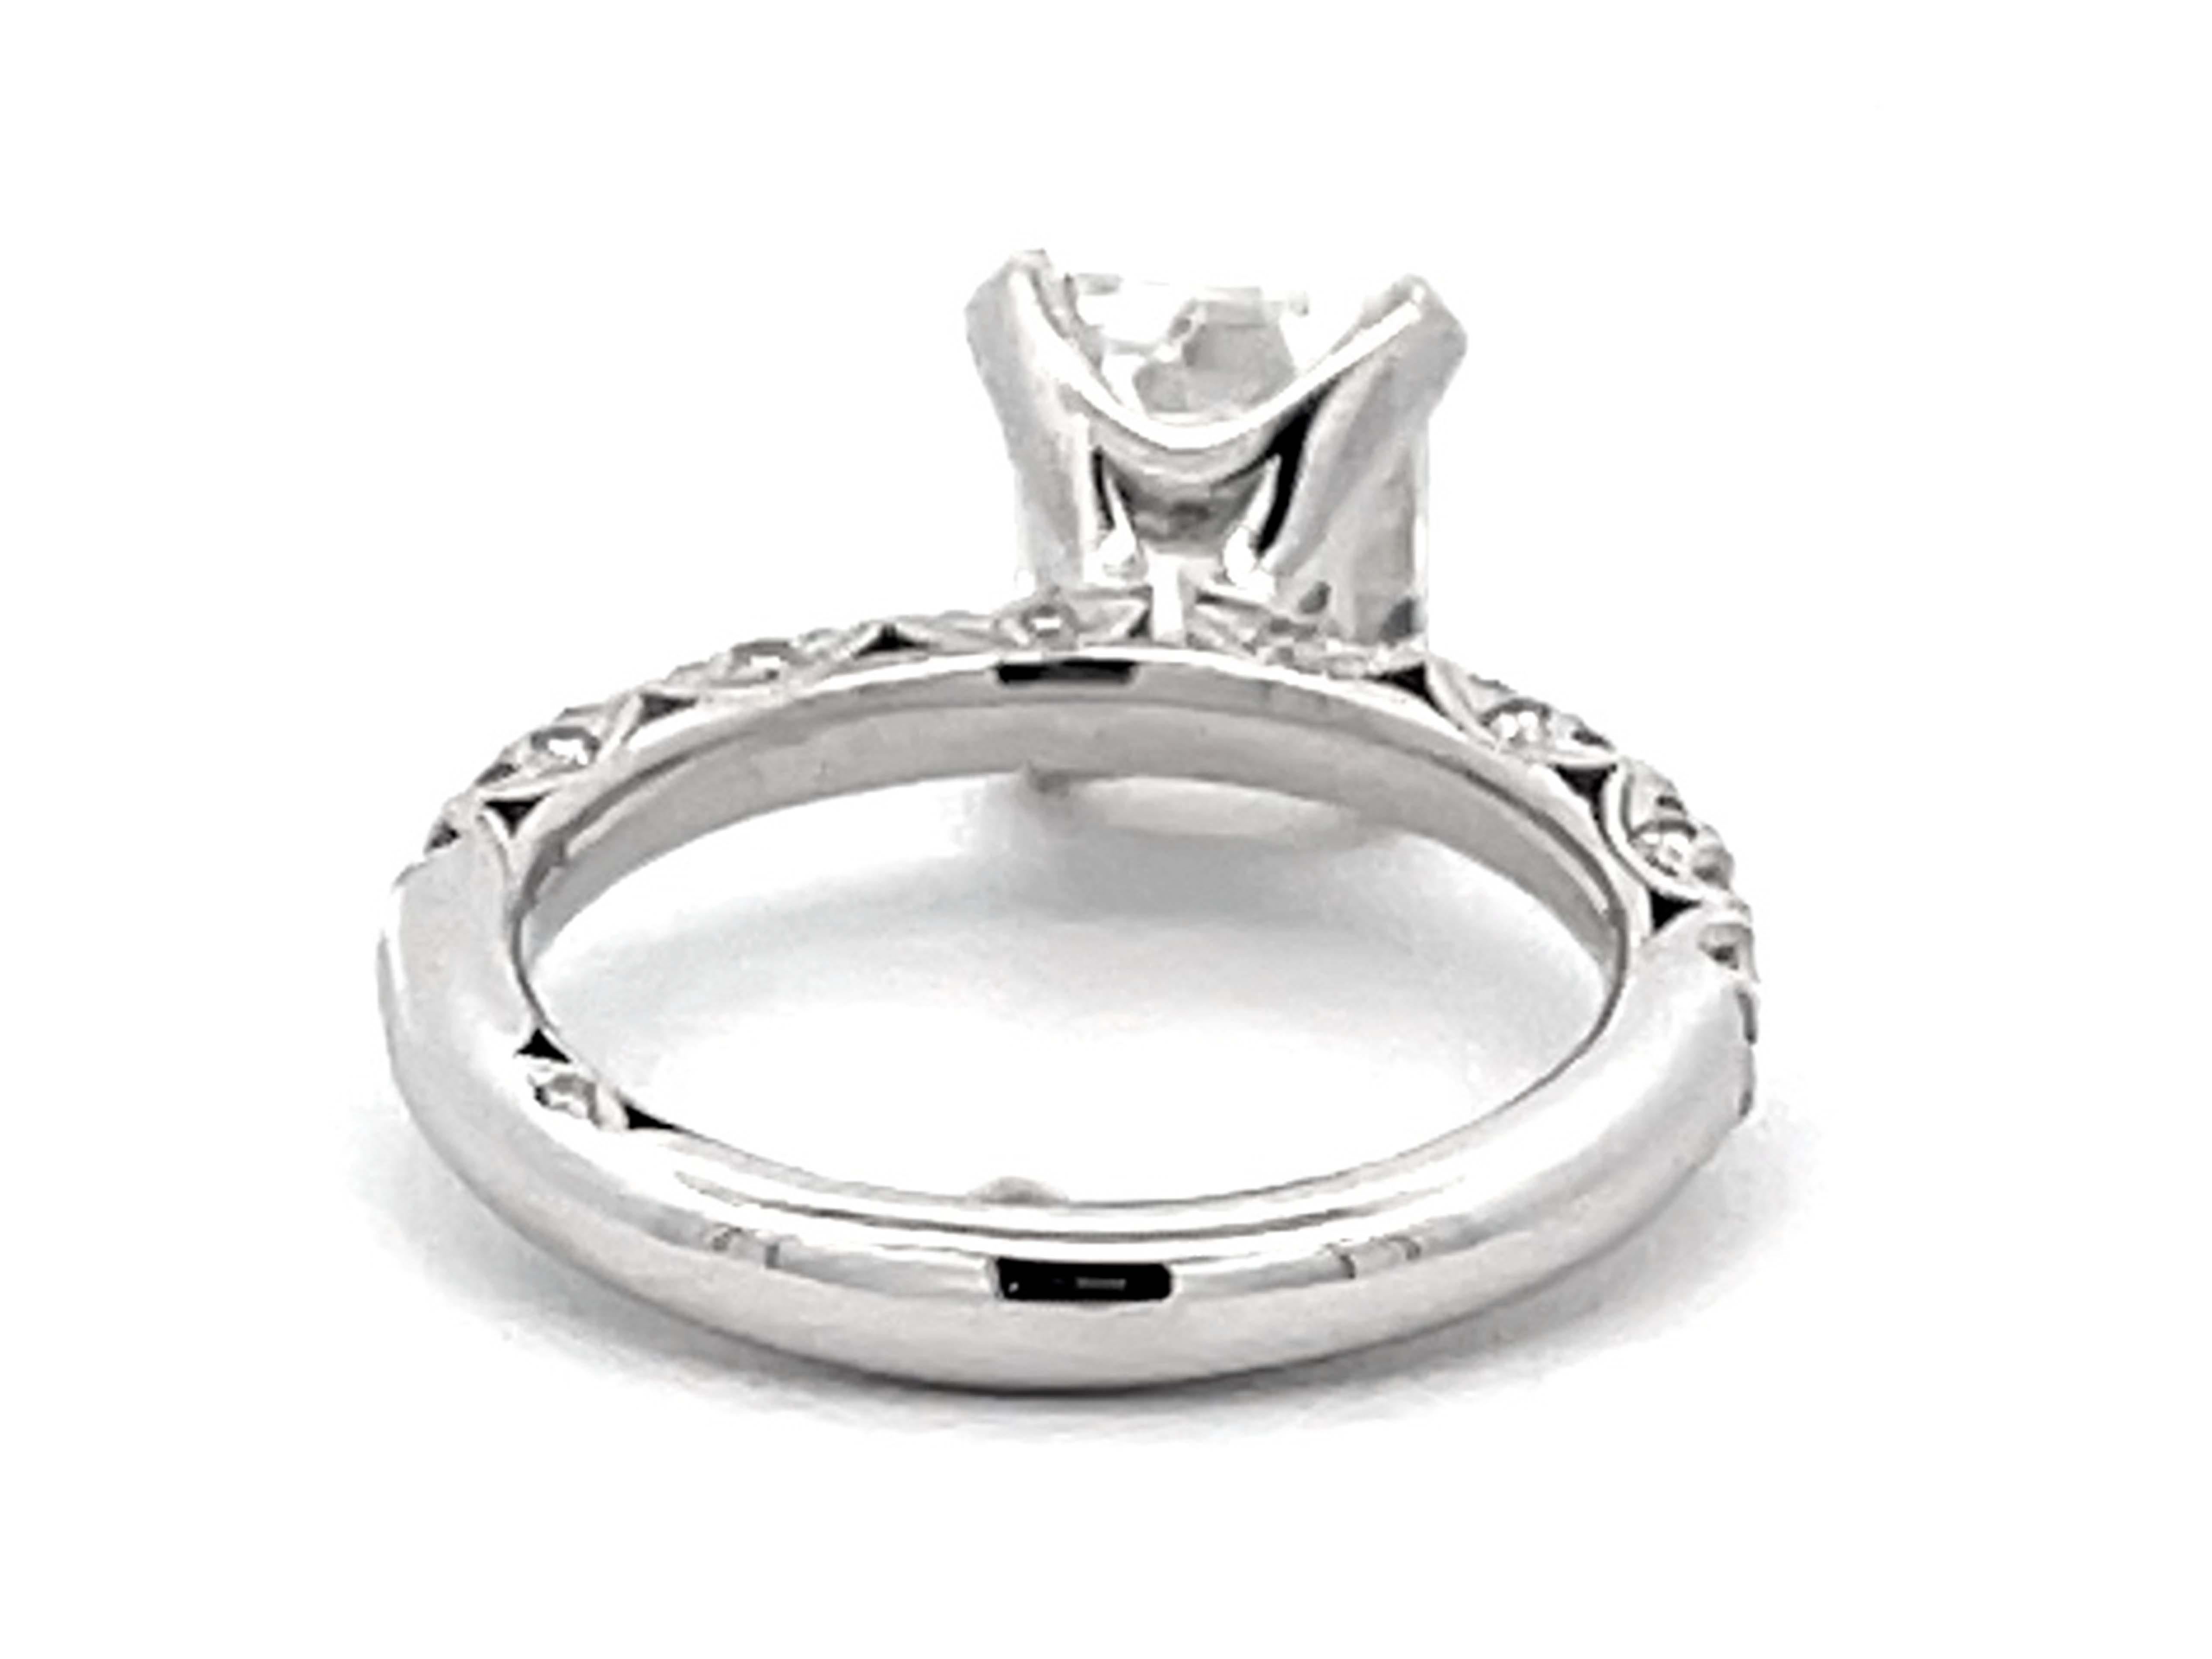 Tacori 2 Carat Emerald Cut Diamond Engagement Ring Platinum For Sale 2